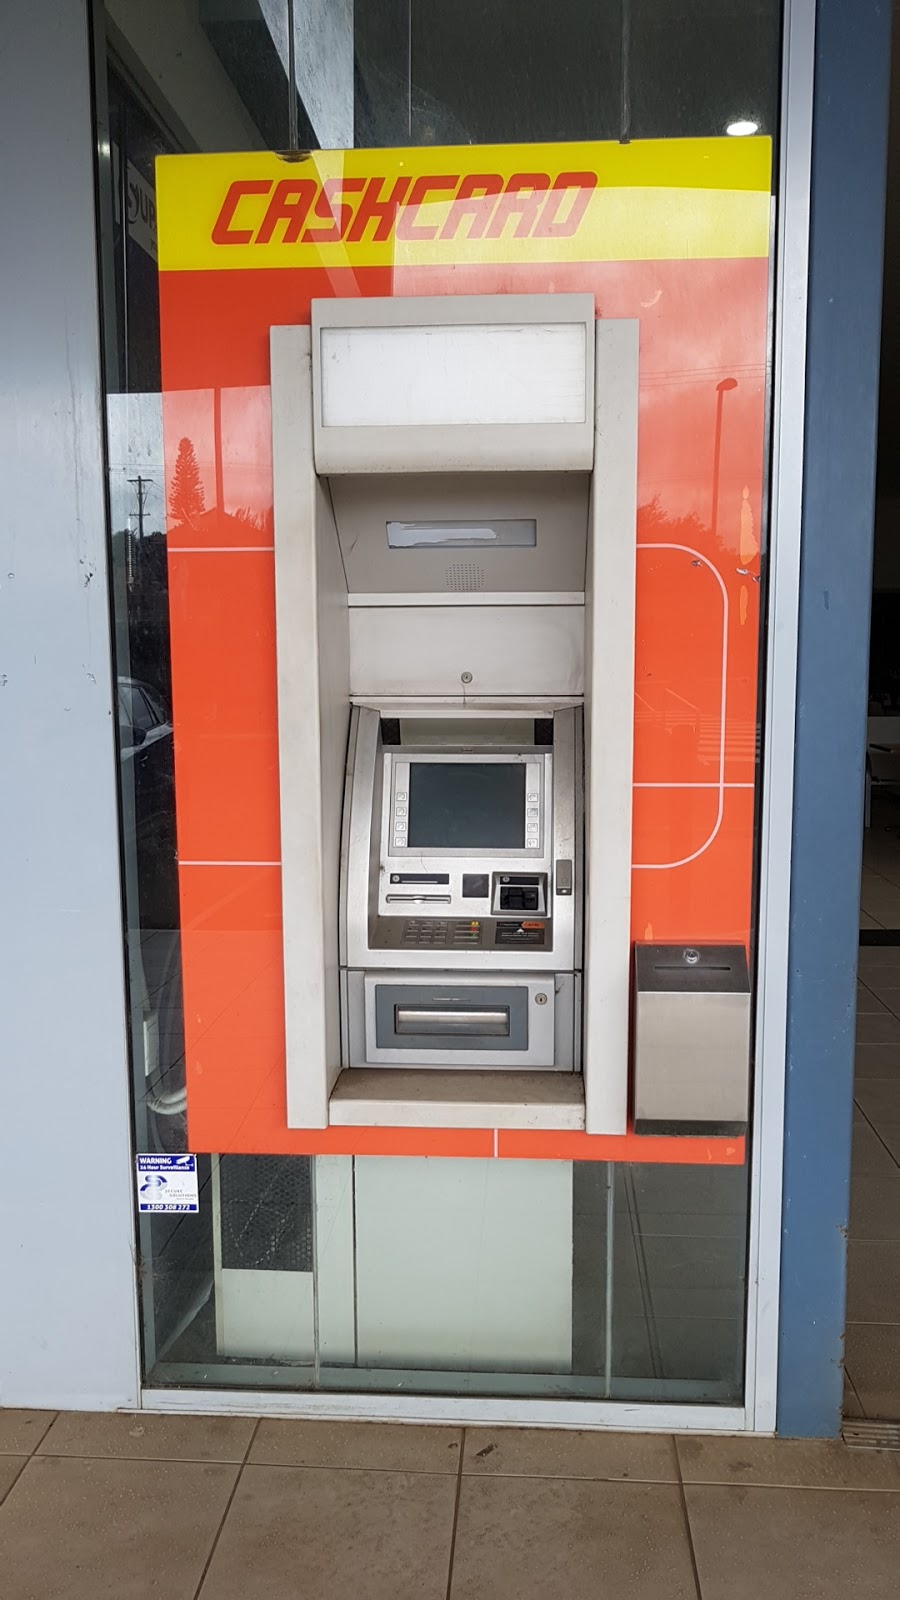 Cashcard ATM | atm | 546 Bridge St, Torrington QLD 4350, Australia | 1800800521 OR +61 1800 800 521